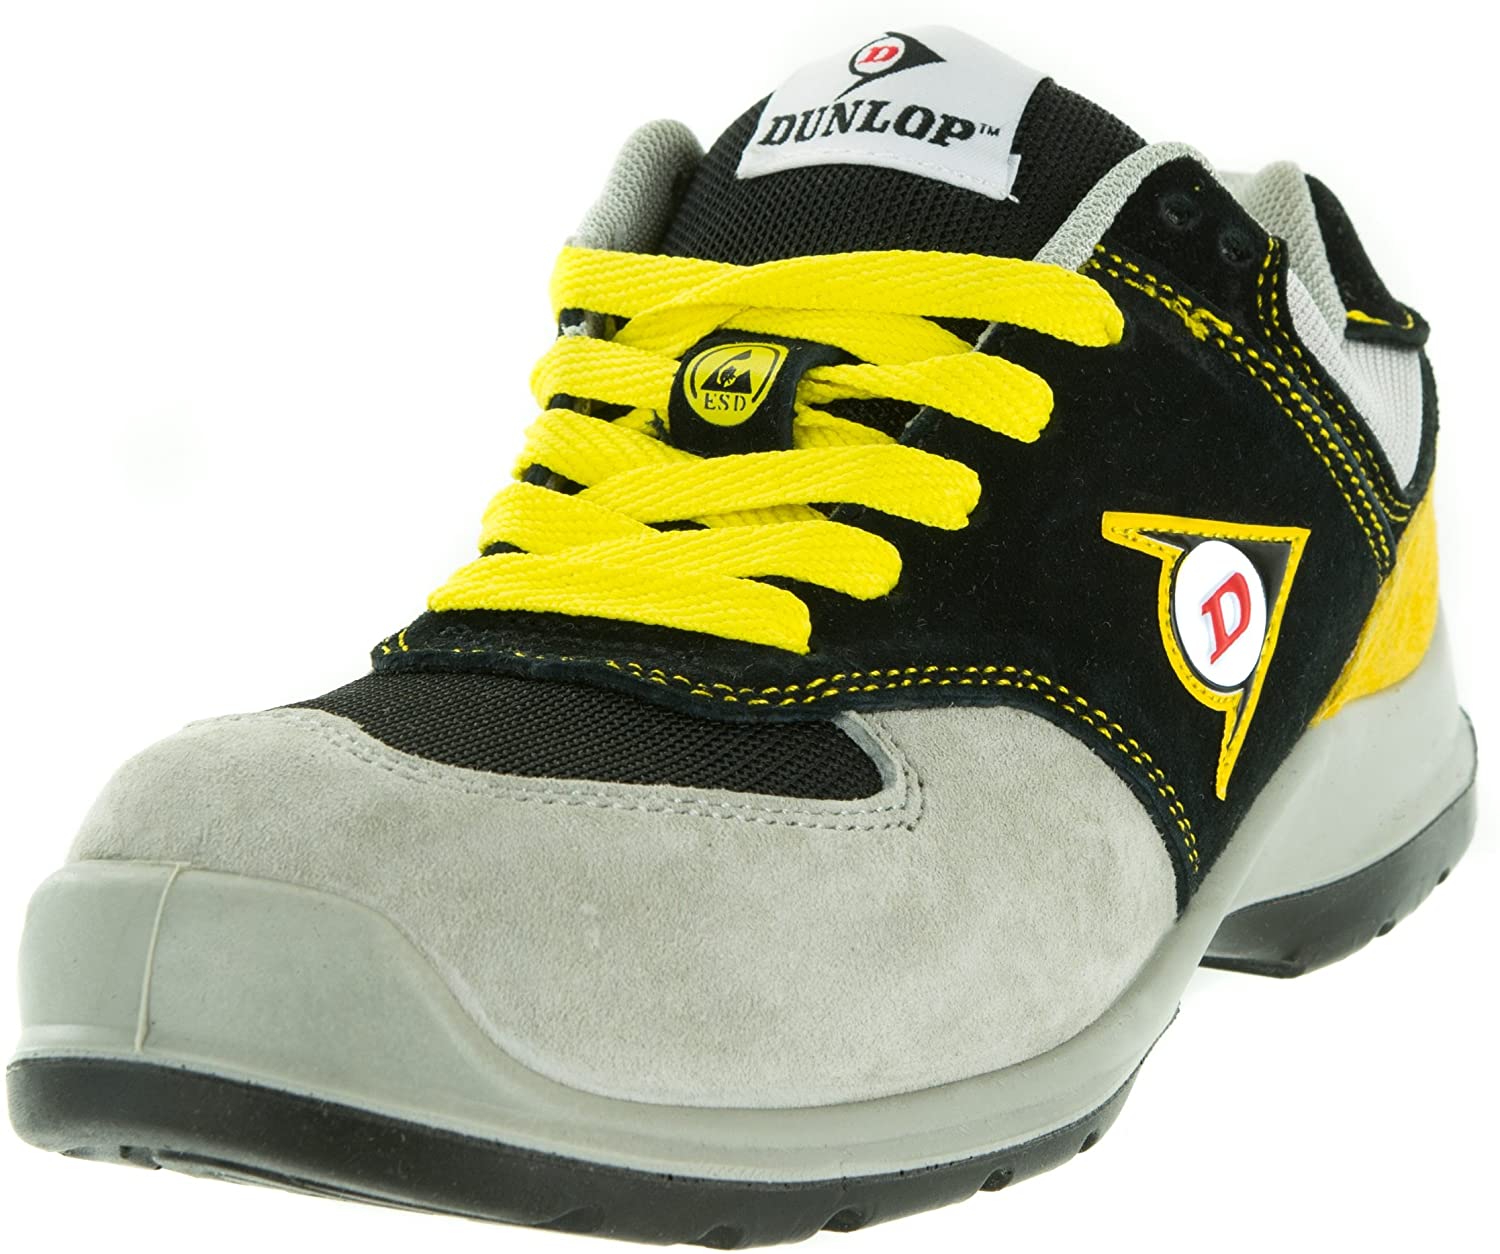 Dunlop Sicherheitsschuhe Sicherheitsstiefel Arbeitsschuhe Safety Shoes NEU Damen 